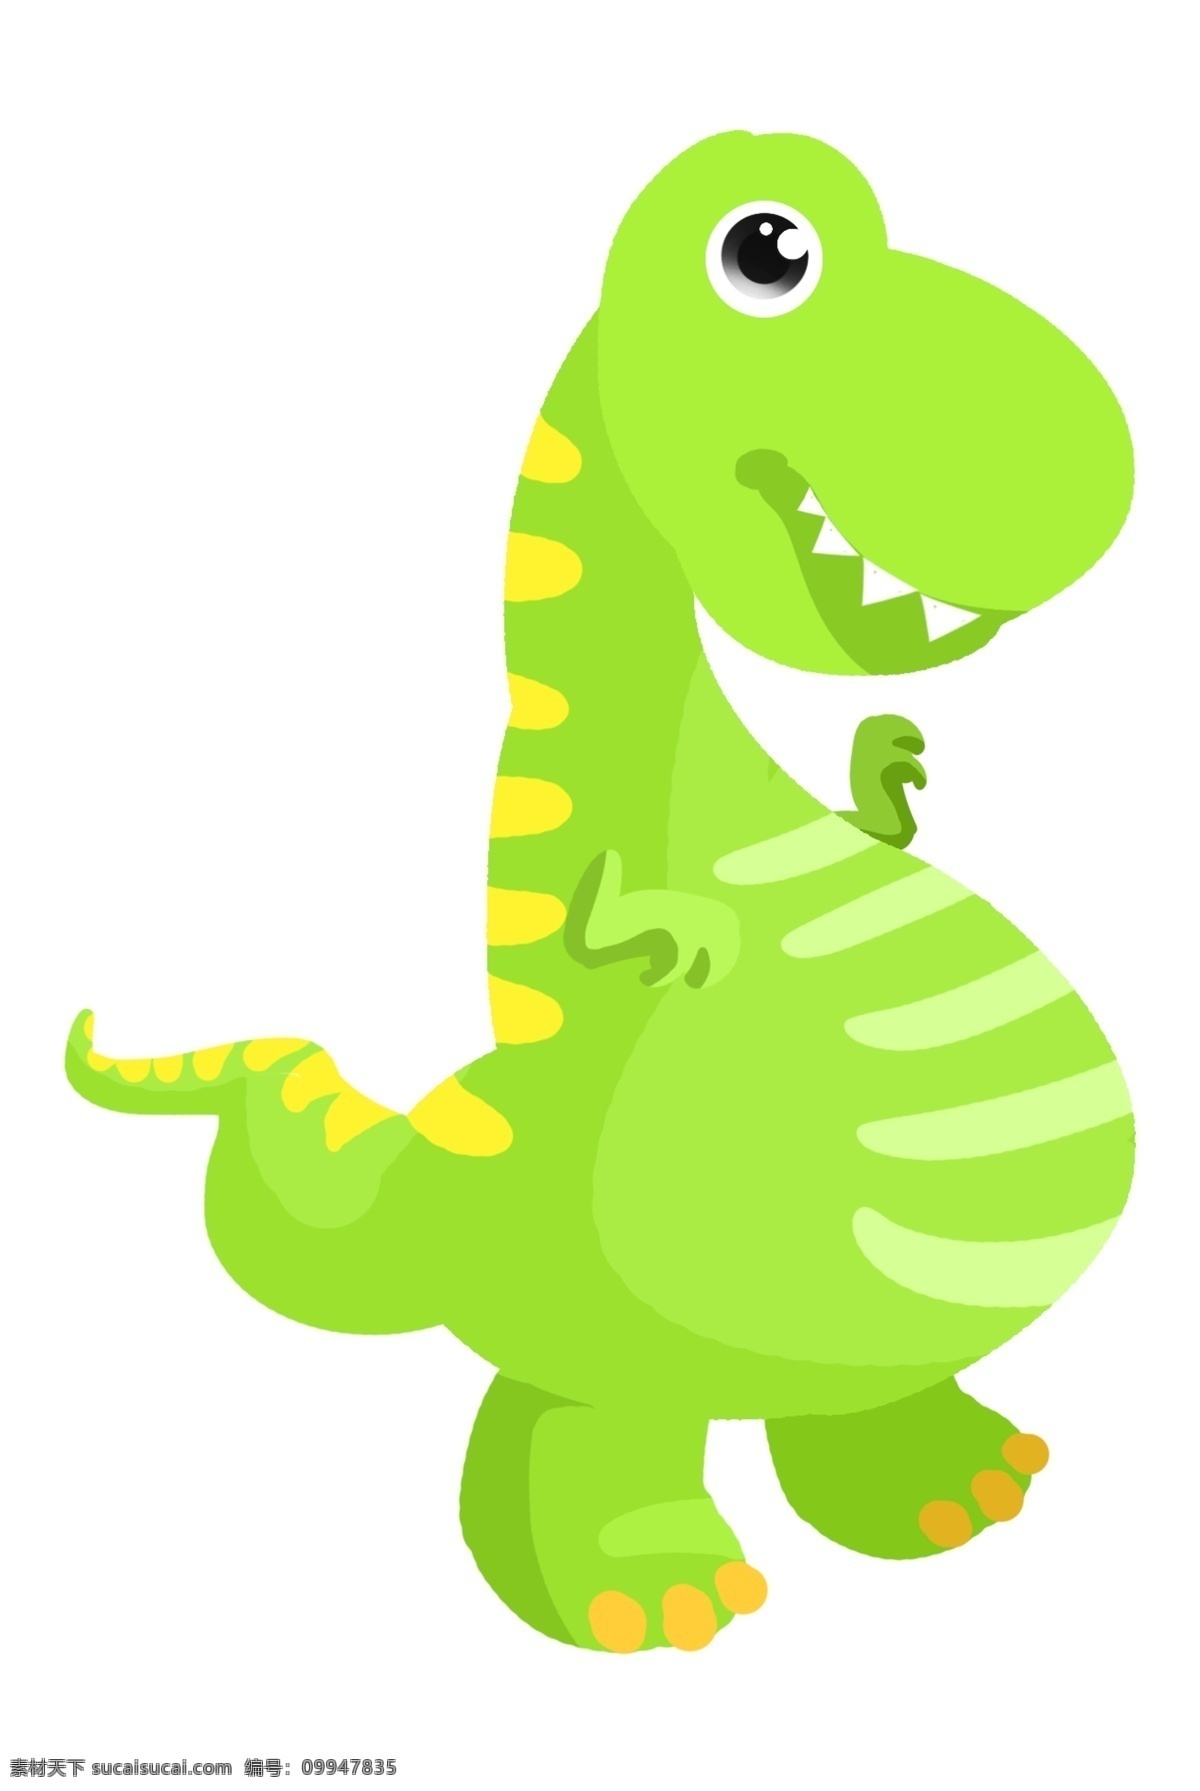 可爱 动物 恐龙 插画 小可爱恐龙 绿色卡通恐龙 可爱动物恐龙 野生动物恐龙 可爱恐龙 小恐龙插画